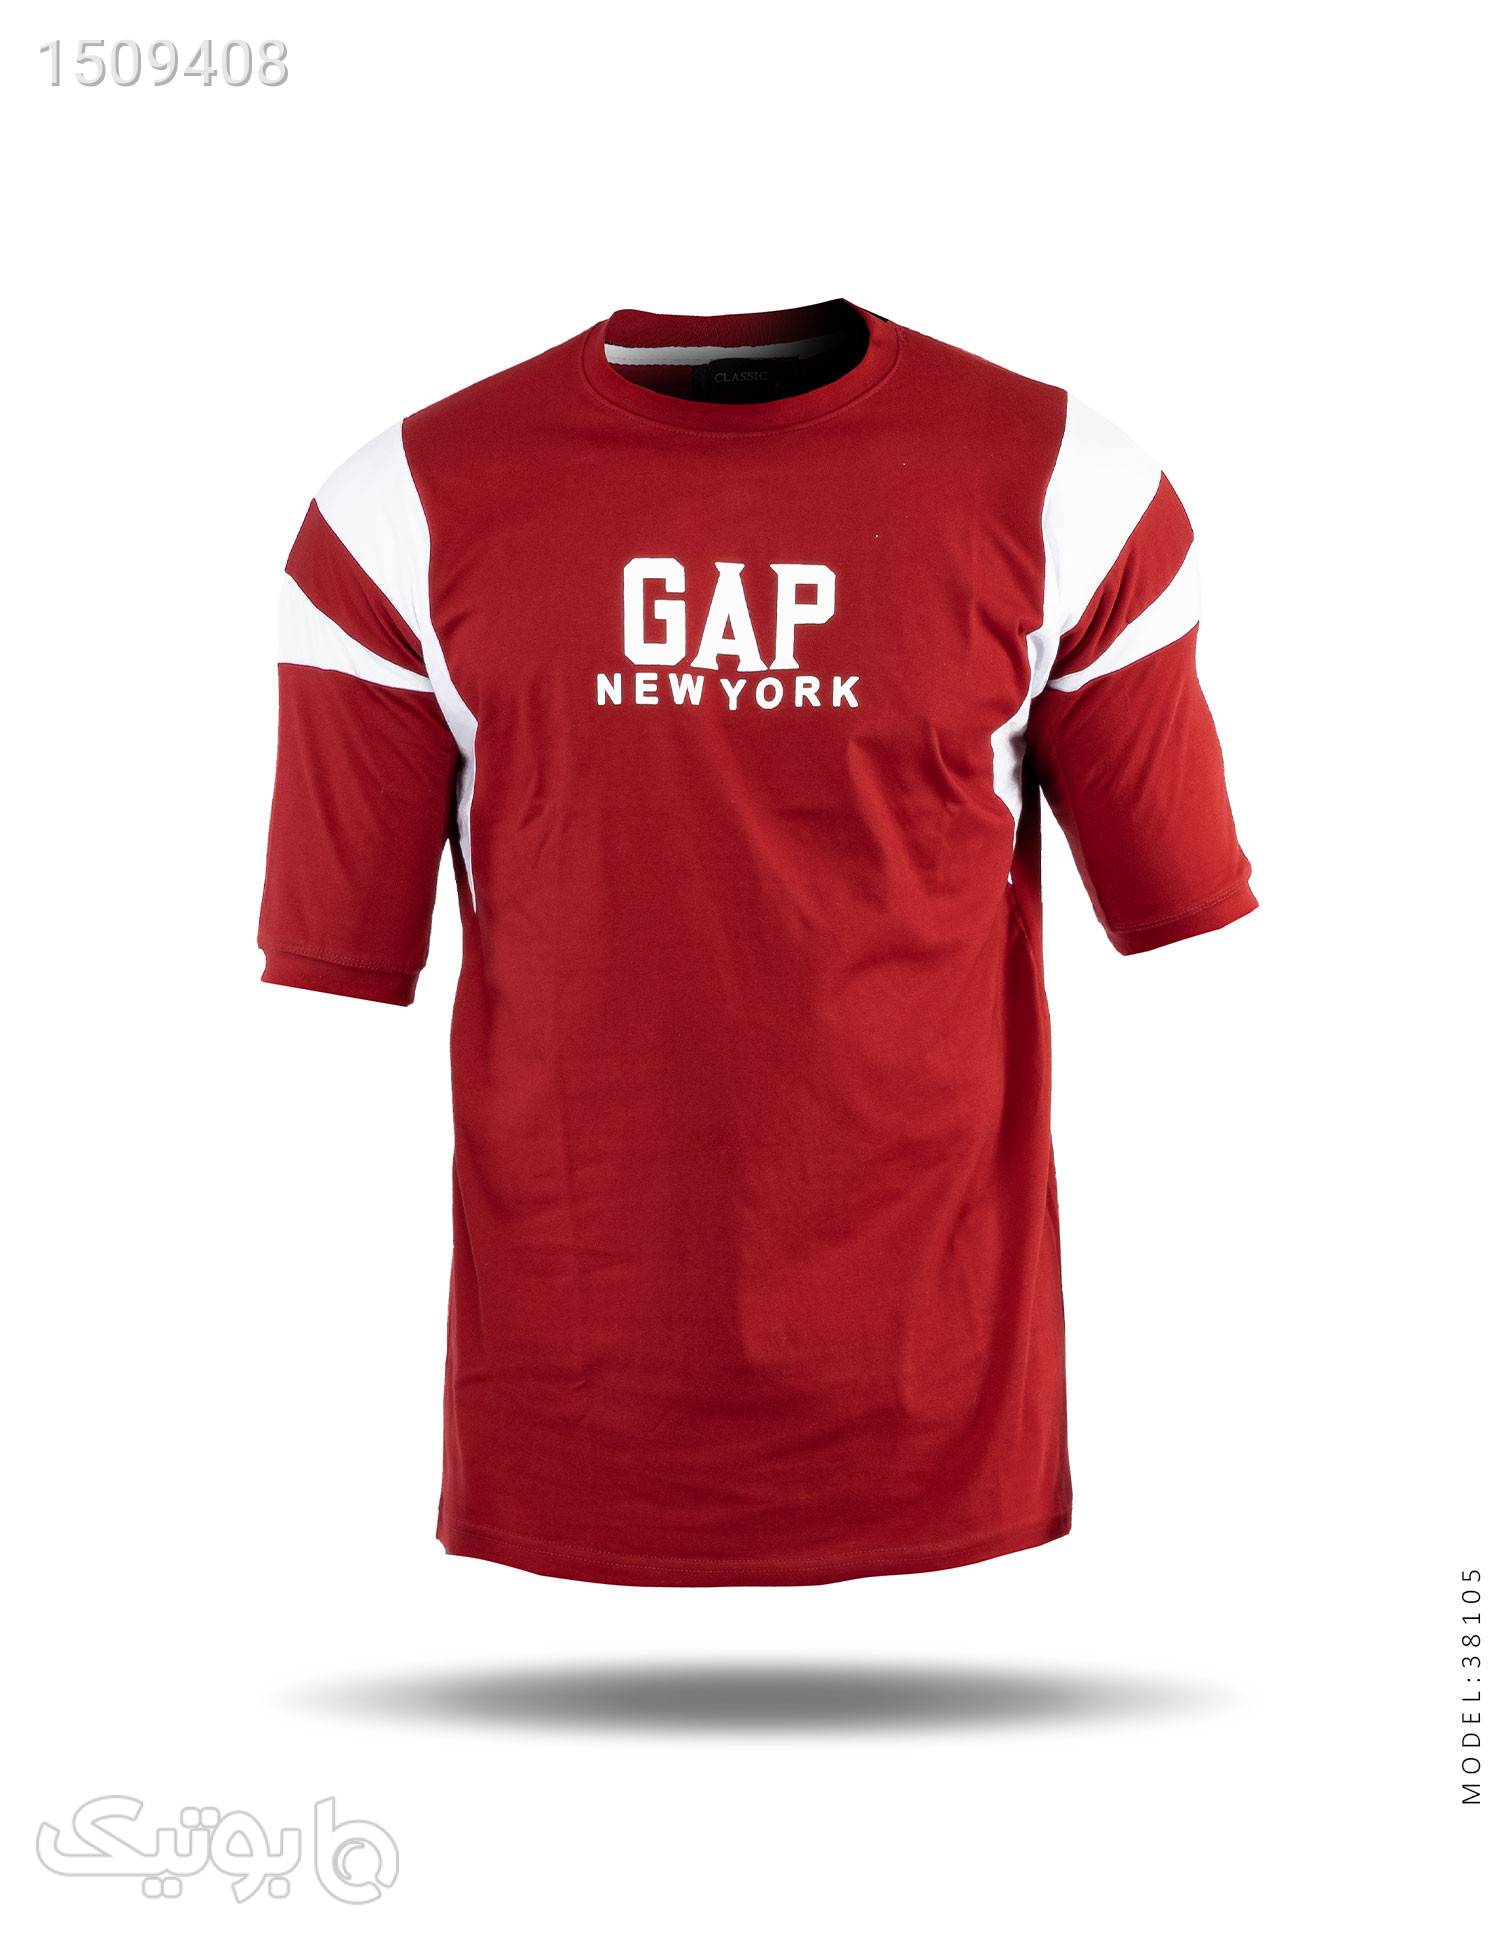 تیشرت مردانه دو رنگ یقه گرد Gap مدل 38105 زرشکی تی شرت و پولو شرت مردانه